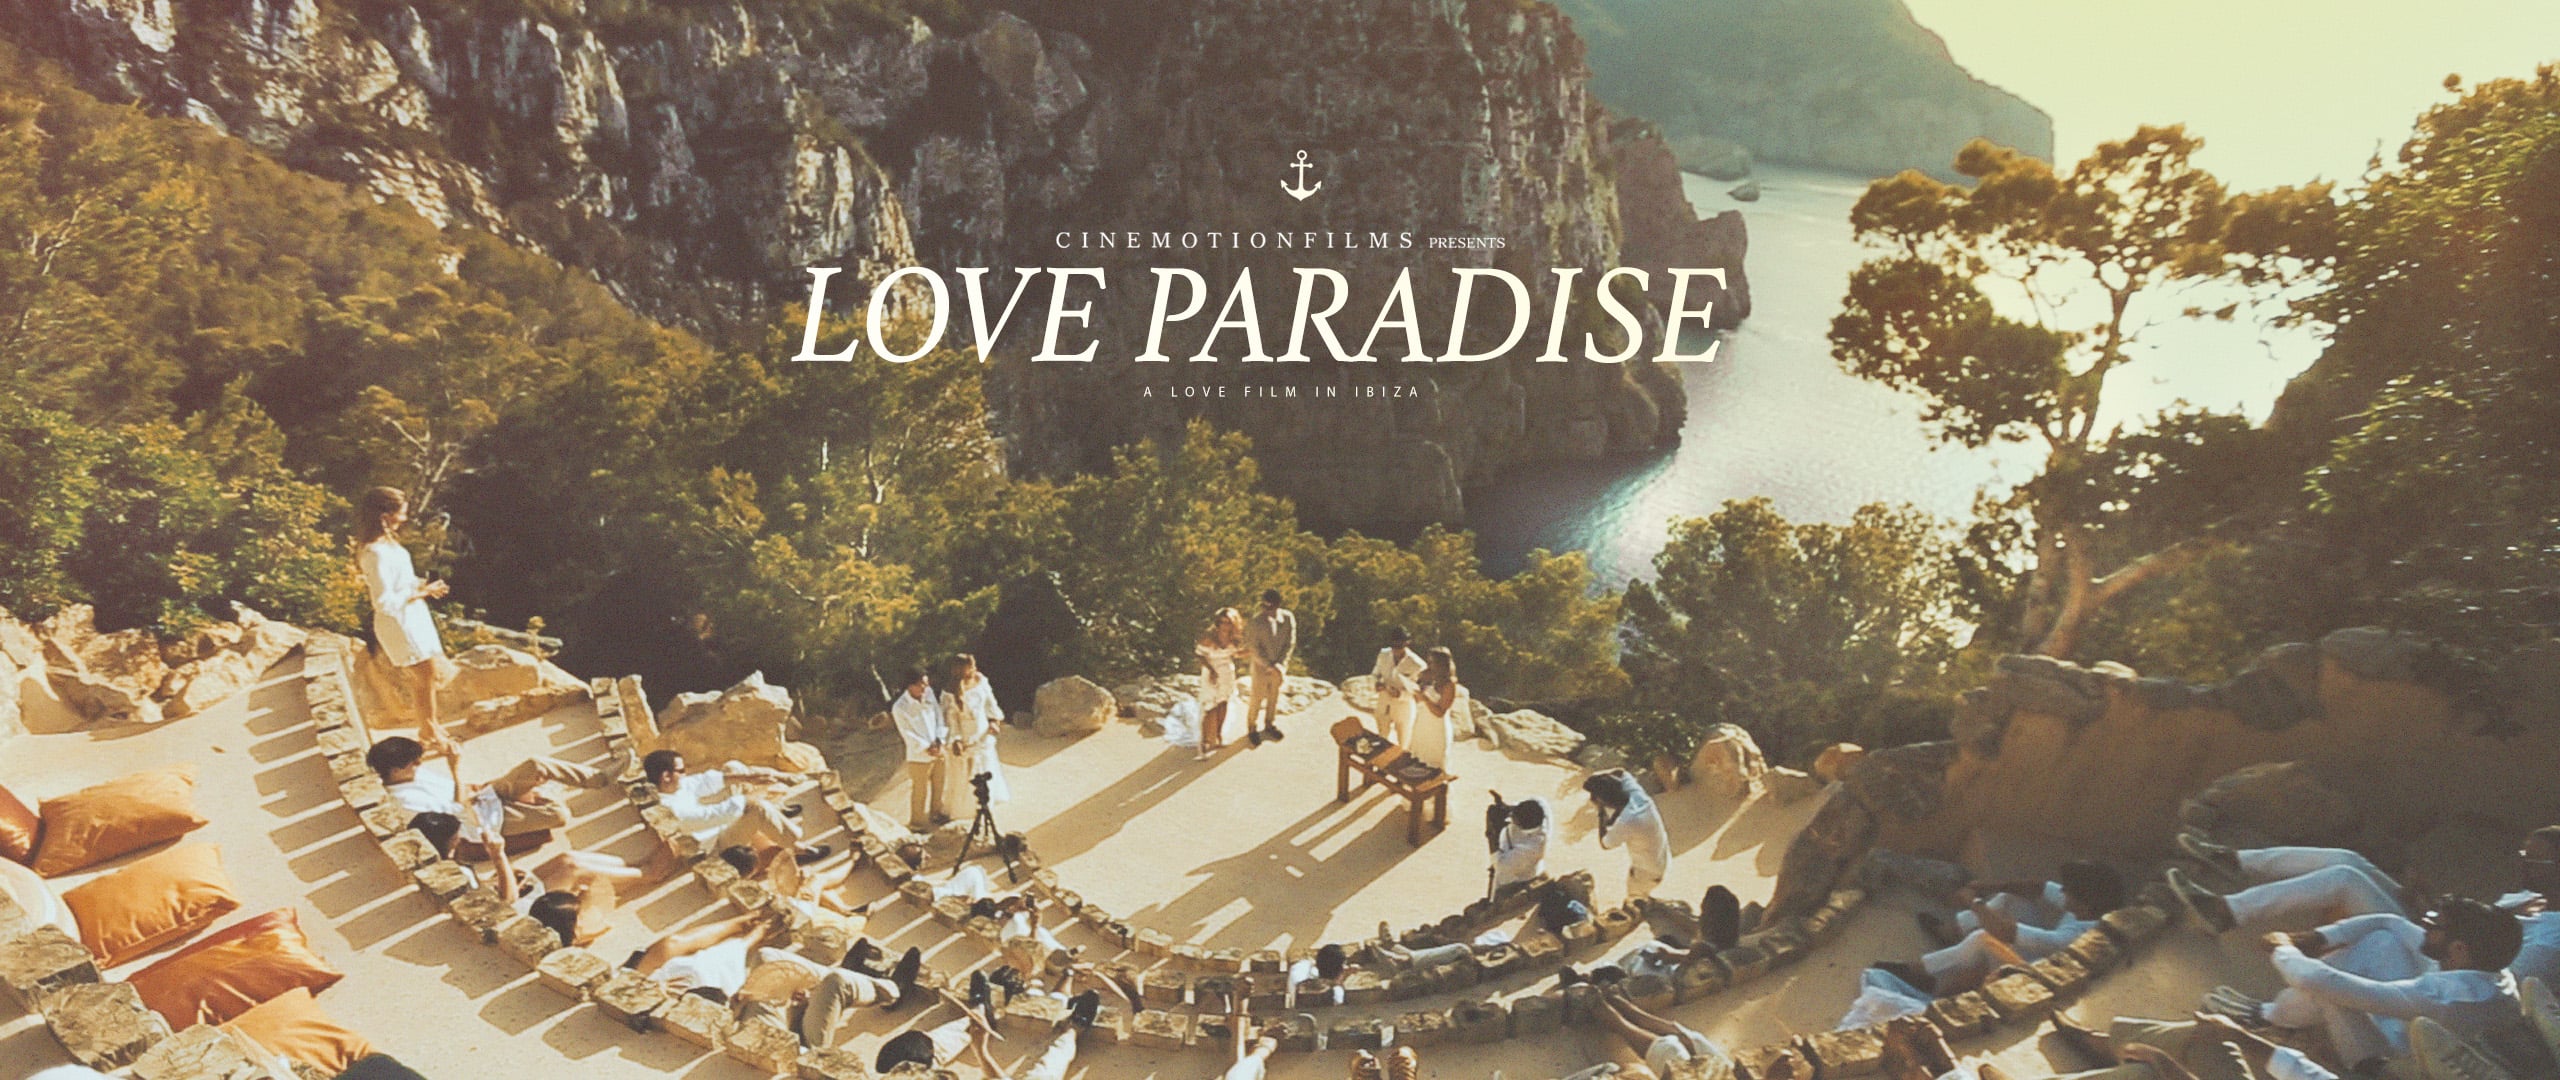 LOVE PARADISE // LOVE FILM IN IBIZA // NATHALIA E RAFAEL